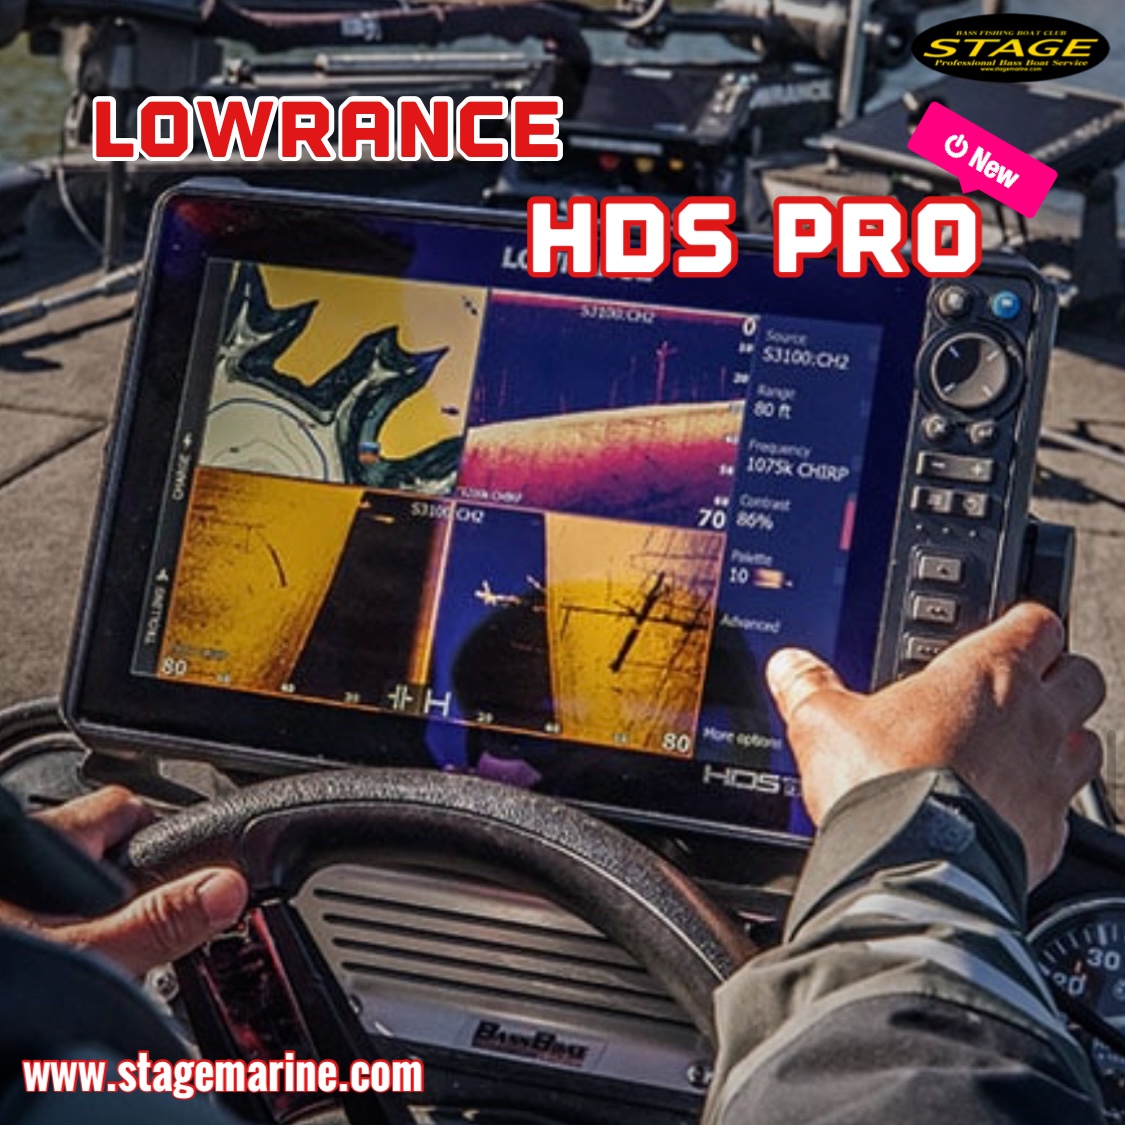 ニューフラッグシップモデル Lowrance HDS PRO